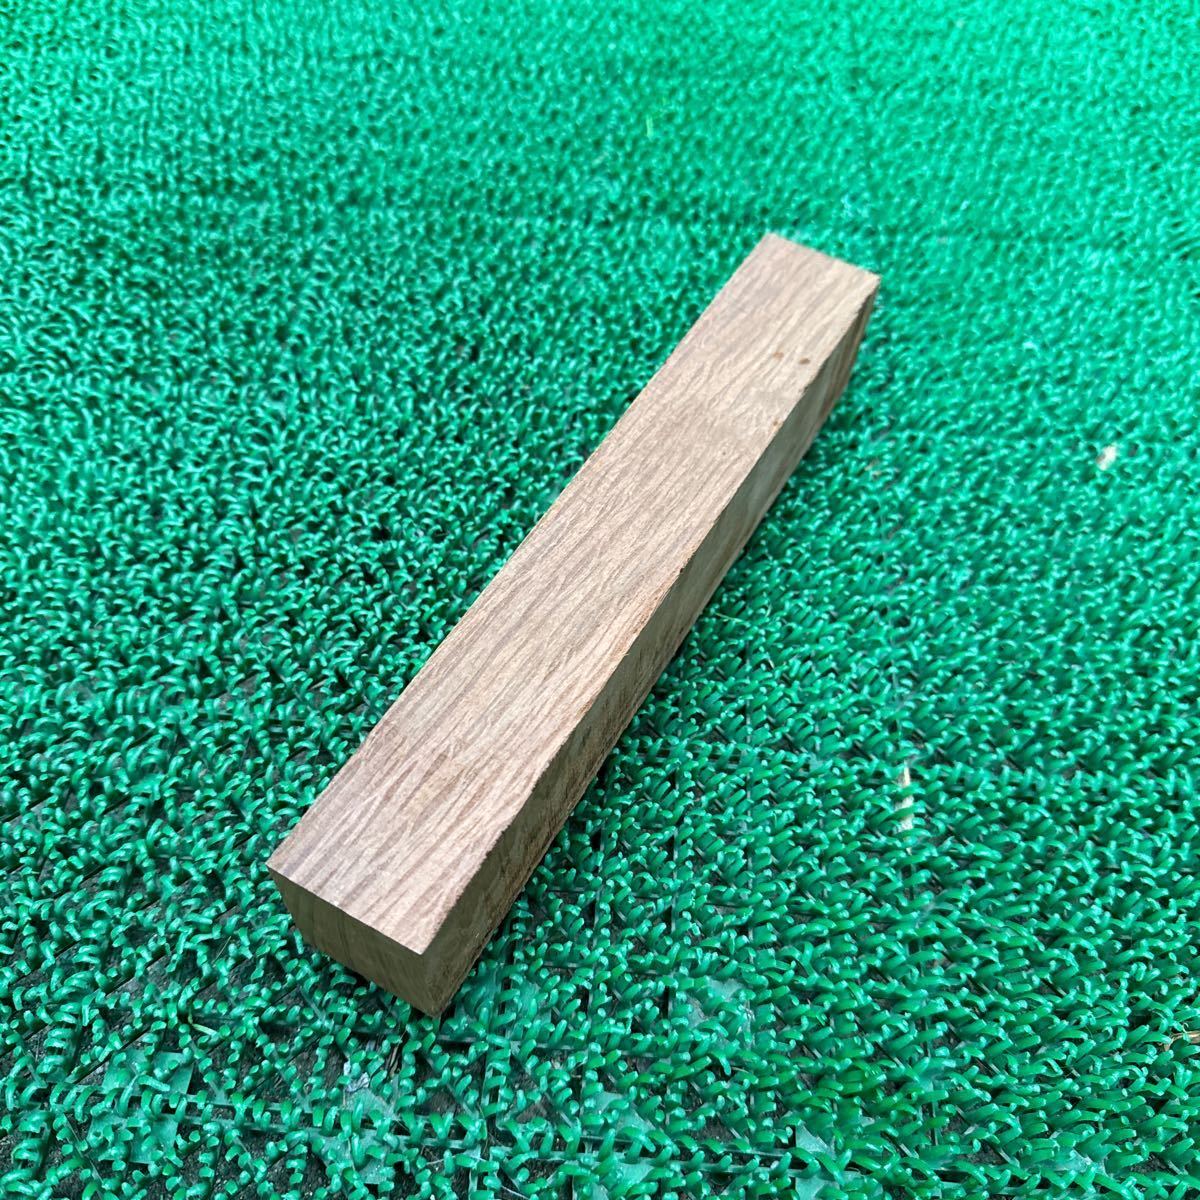  ② シーオーク 22.4×4.4×3.5cm 250g端材 木材_画像6